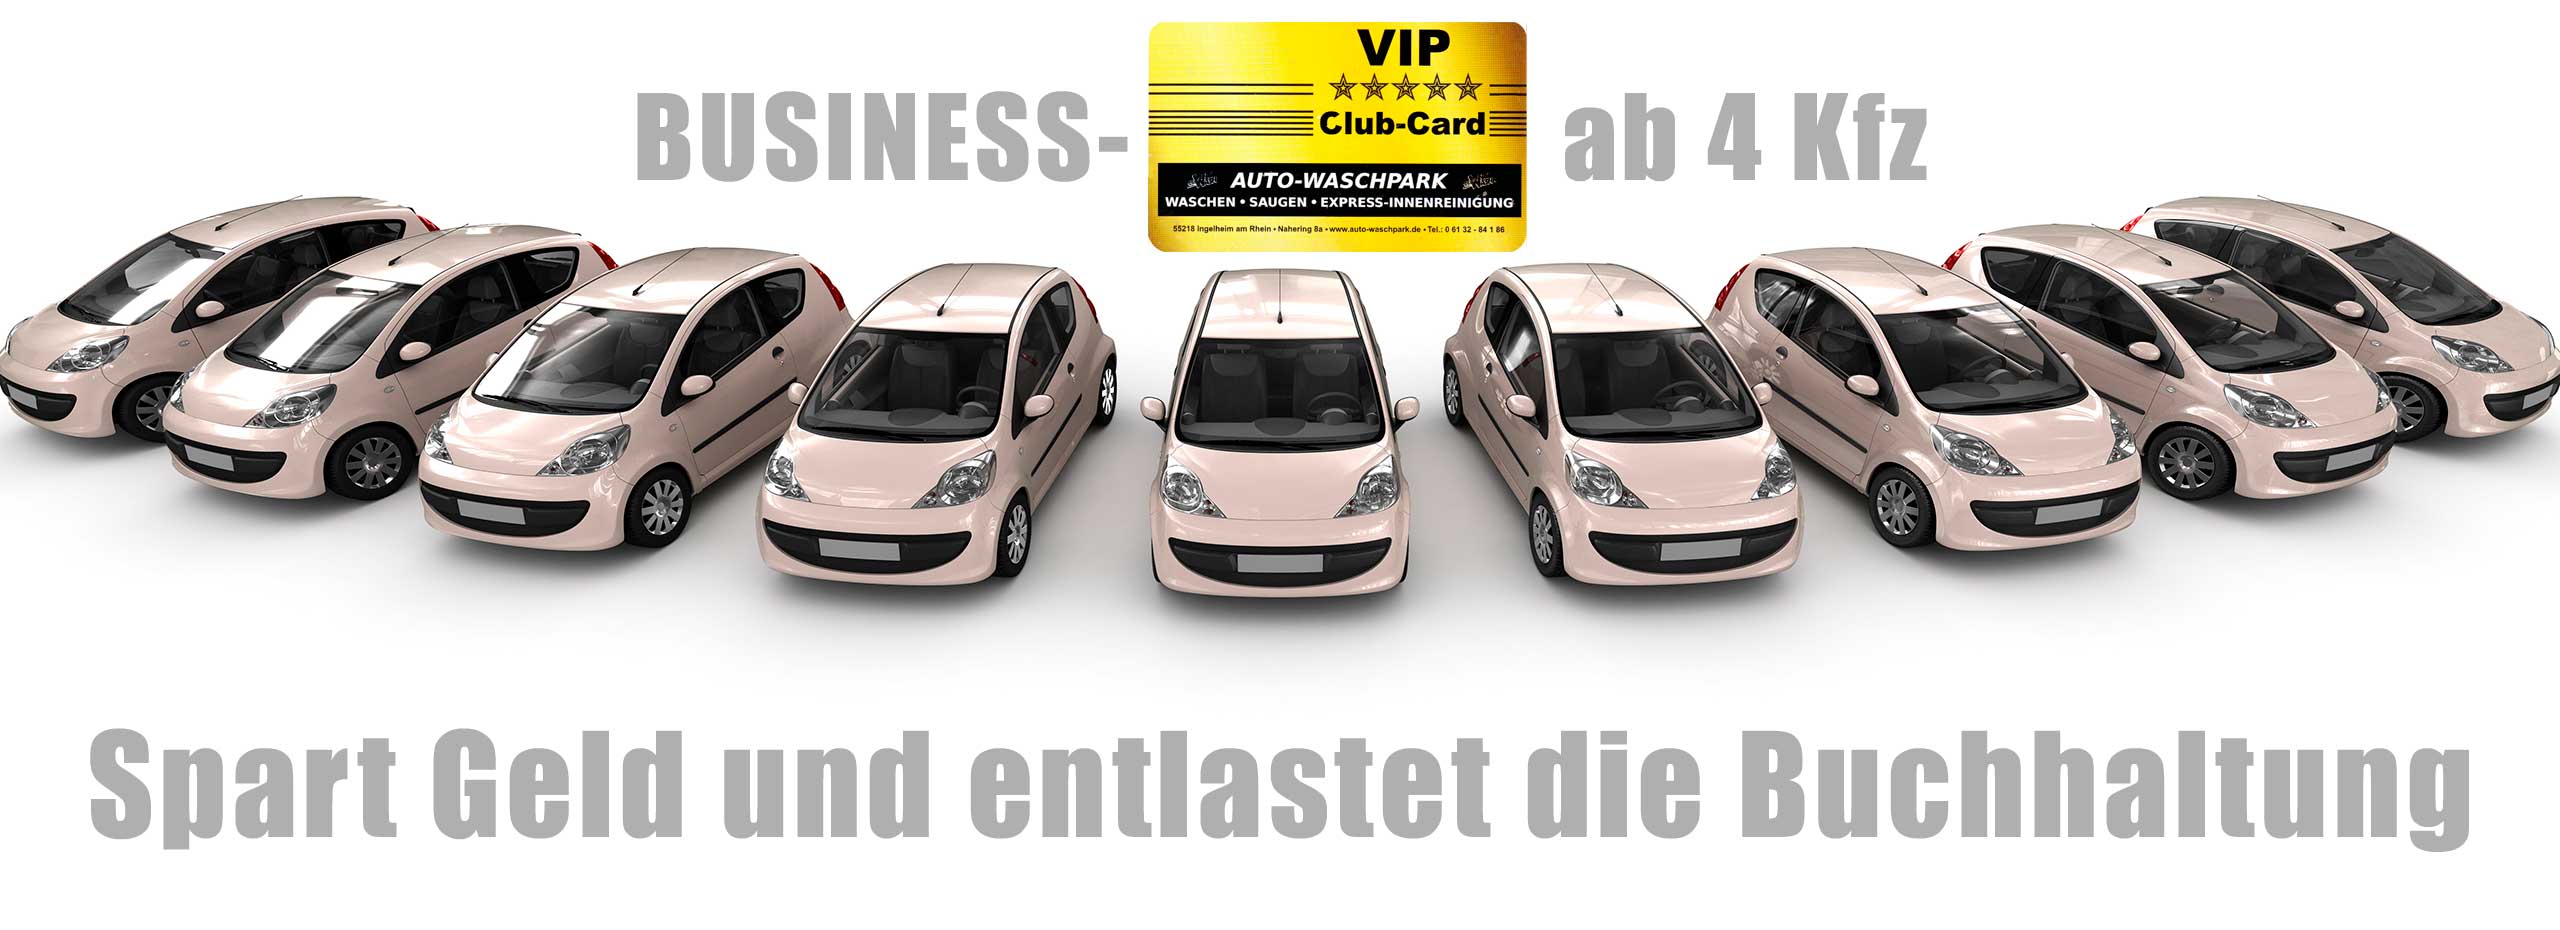 VIP-card-business_Auto-Waschpark-Ingelheim